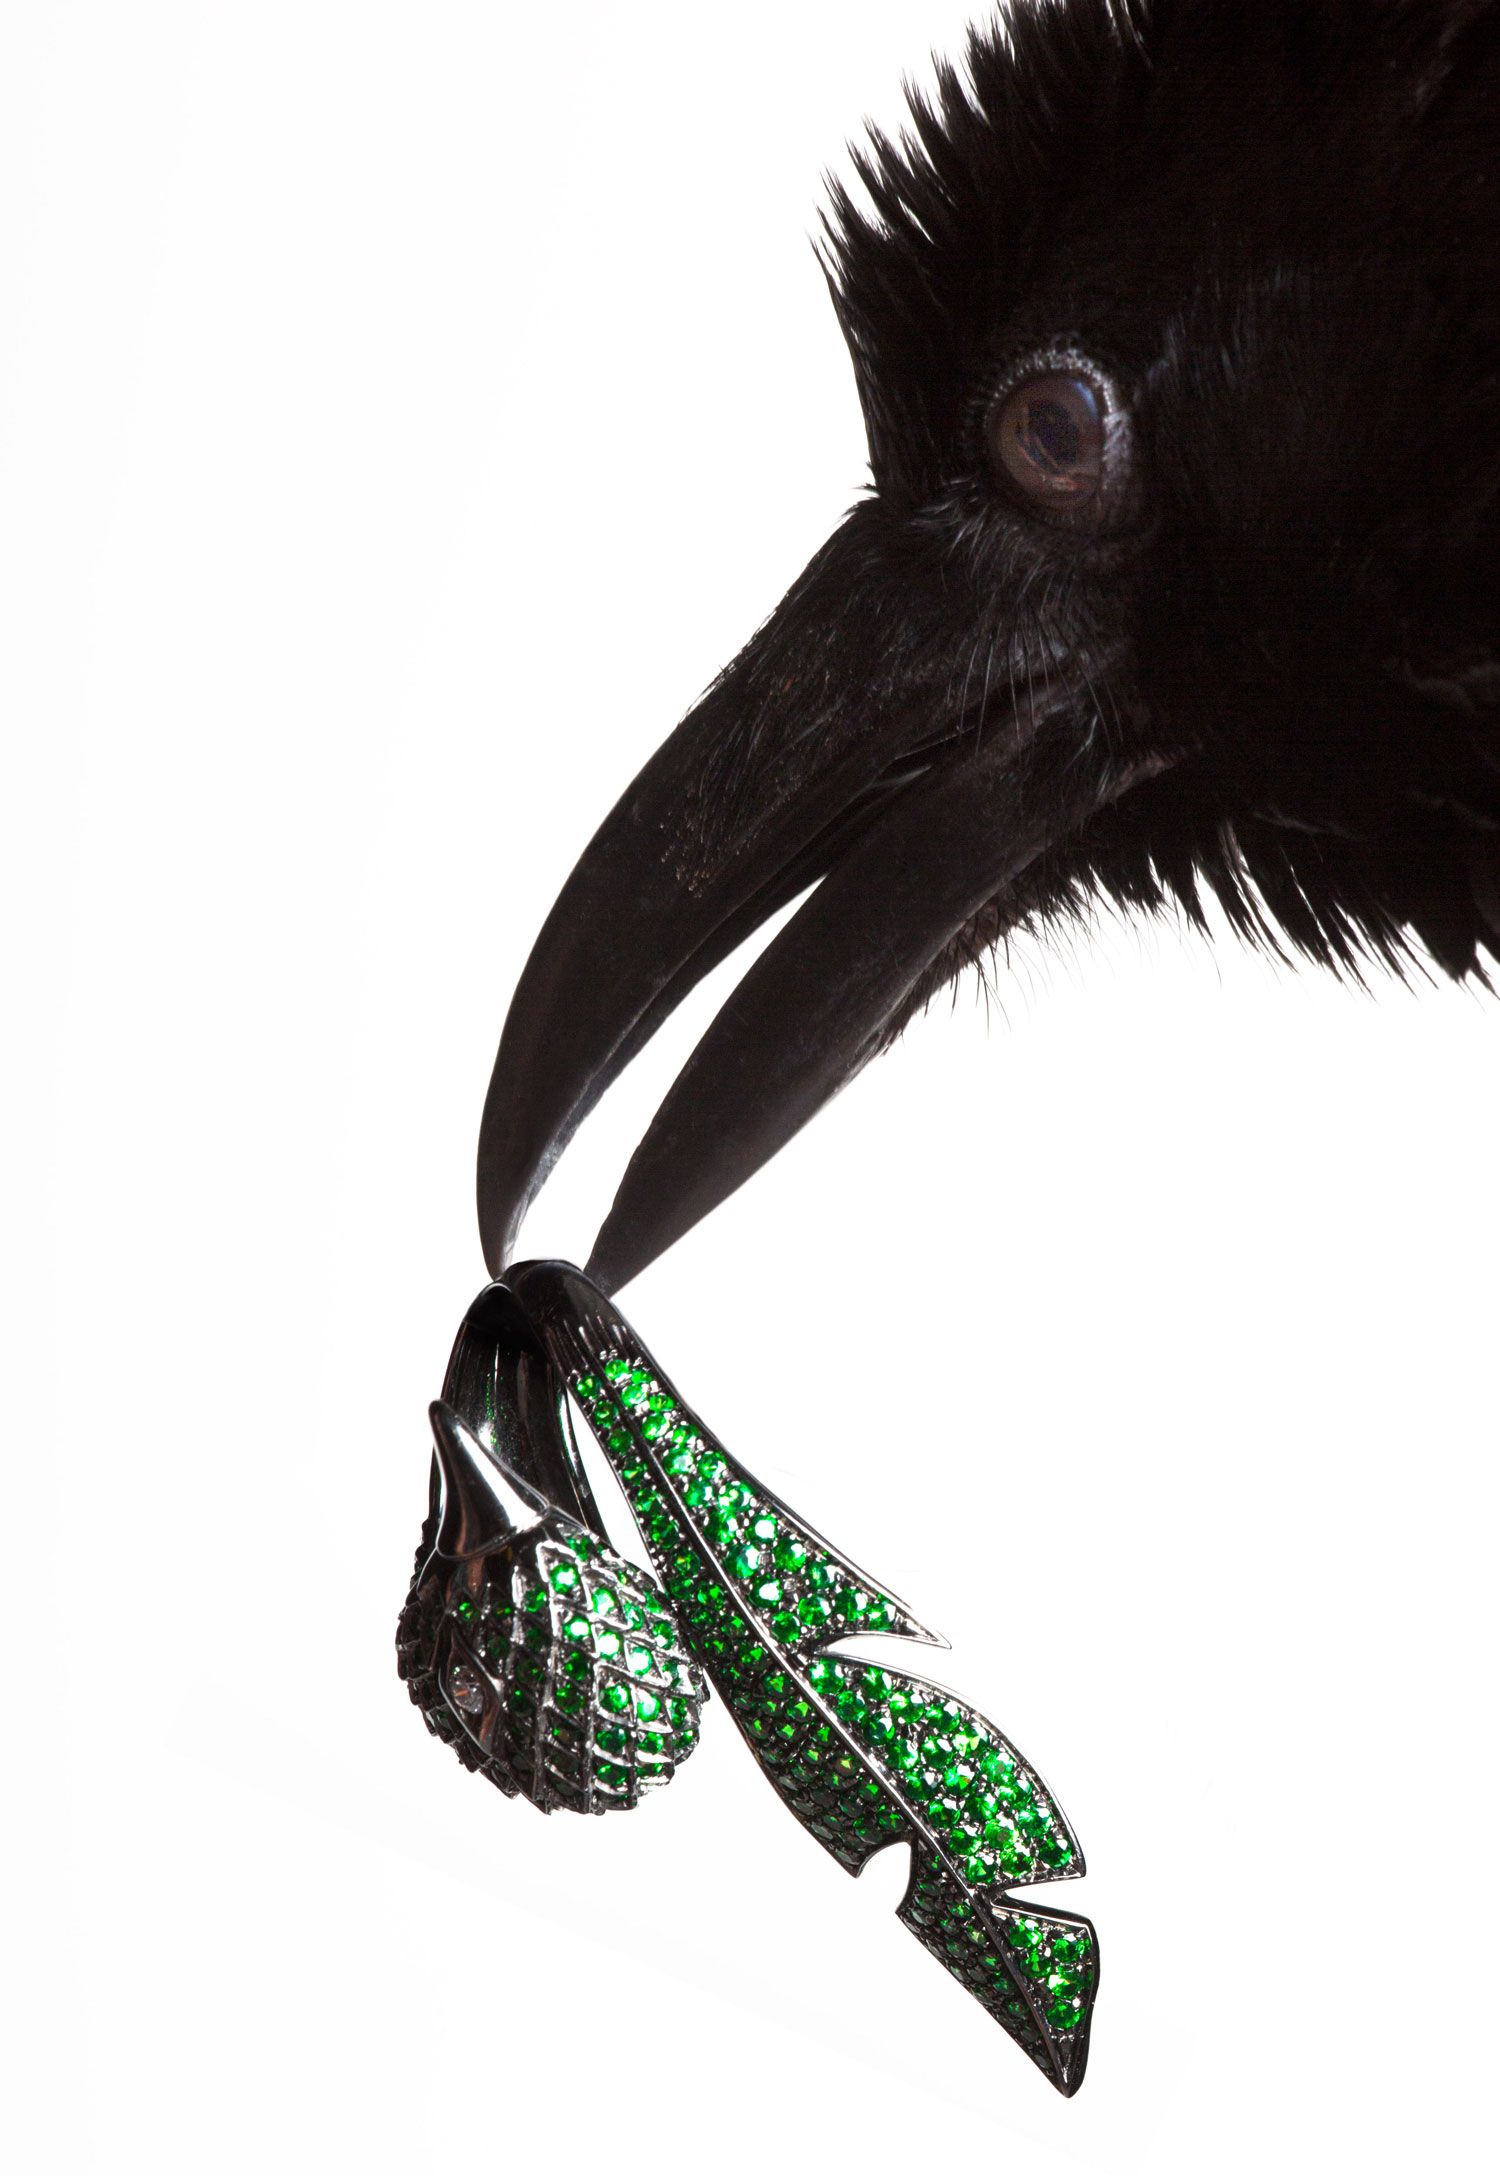 torkil gudnason animal jewelry bird